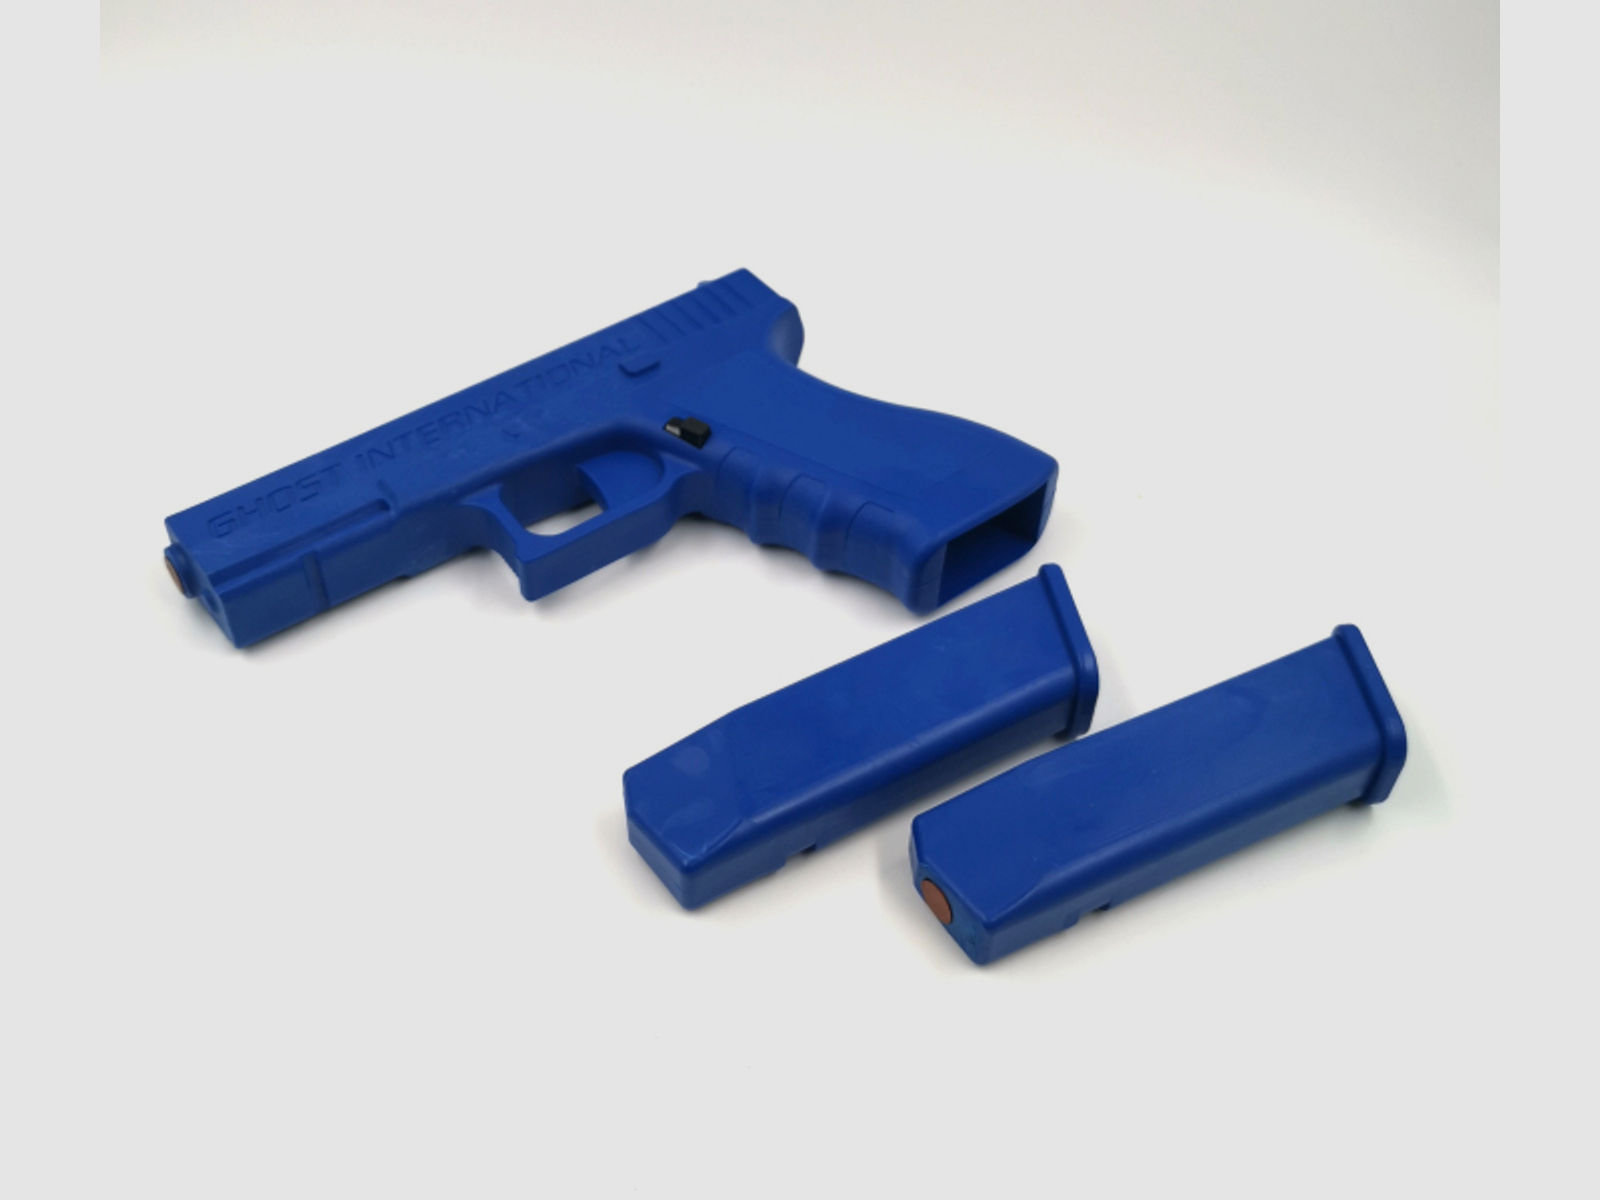 Glock 17 Trainingswaffe mit 2 Magazinen zum Wechseln Trainingspistole Training blau Pistole BLUEGUN